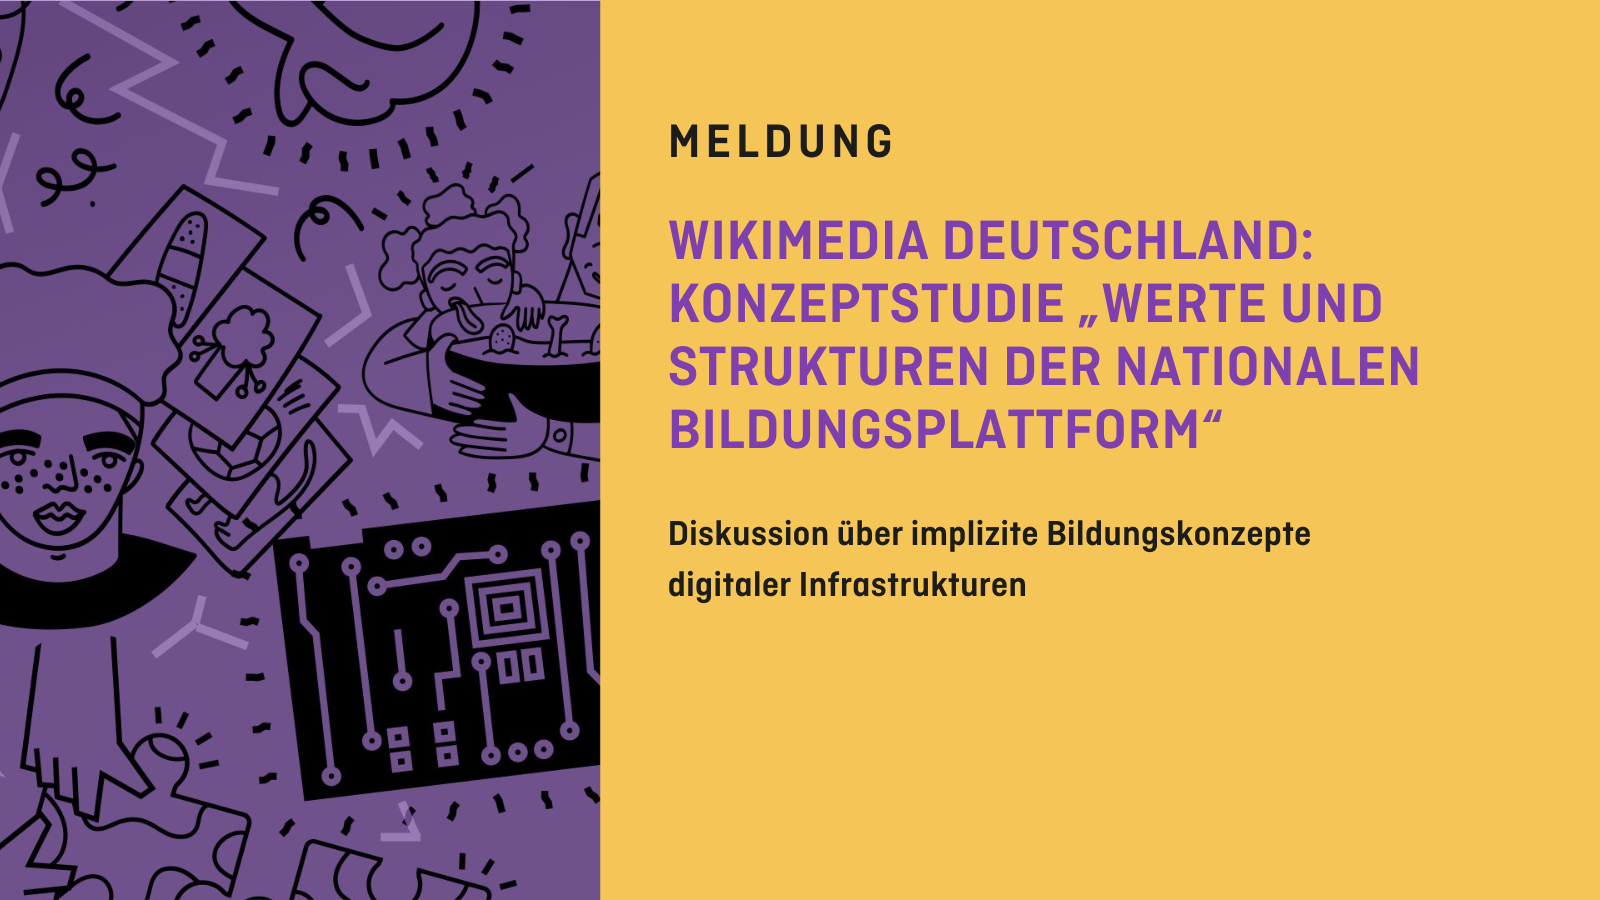 Auf der linken Seite sind Illustrationen zu sehen. Rechts steht der Text: "Meldung: Wikimedia Deutschland: Konzeptstudie "Werte und Strukturen der Nationalen Bildungsplattform". Diskussion über implizite Bildungskonzepte digitaler Infrastrukturen."